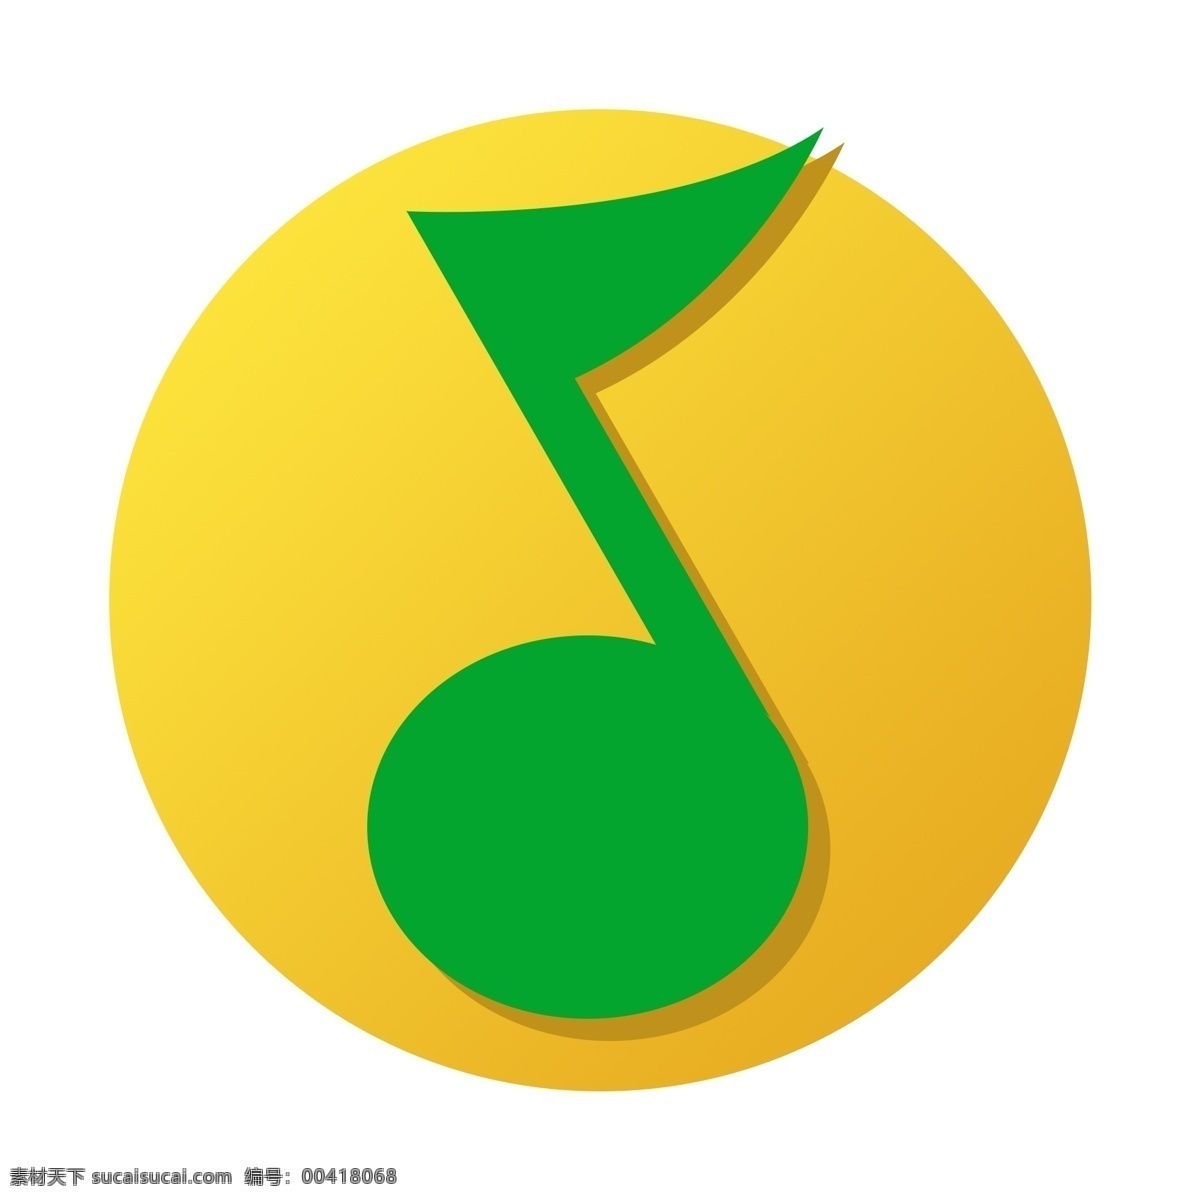 用户 喜爱 音乐软件 qq 音乐 logo qq音乐 音乐质量高 软件 在线听歌 排行榜 流行 摇滚 互动 点播